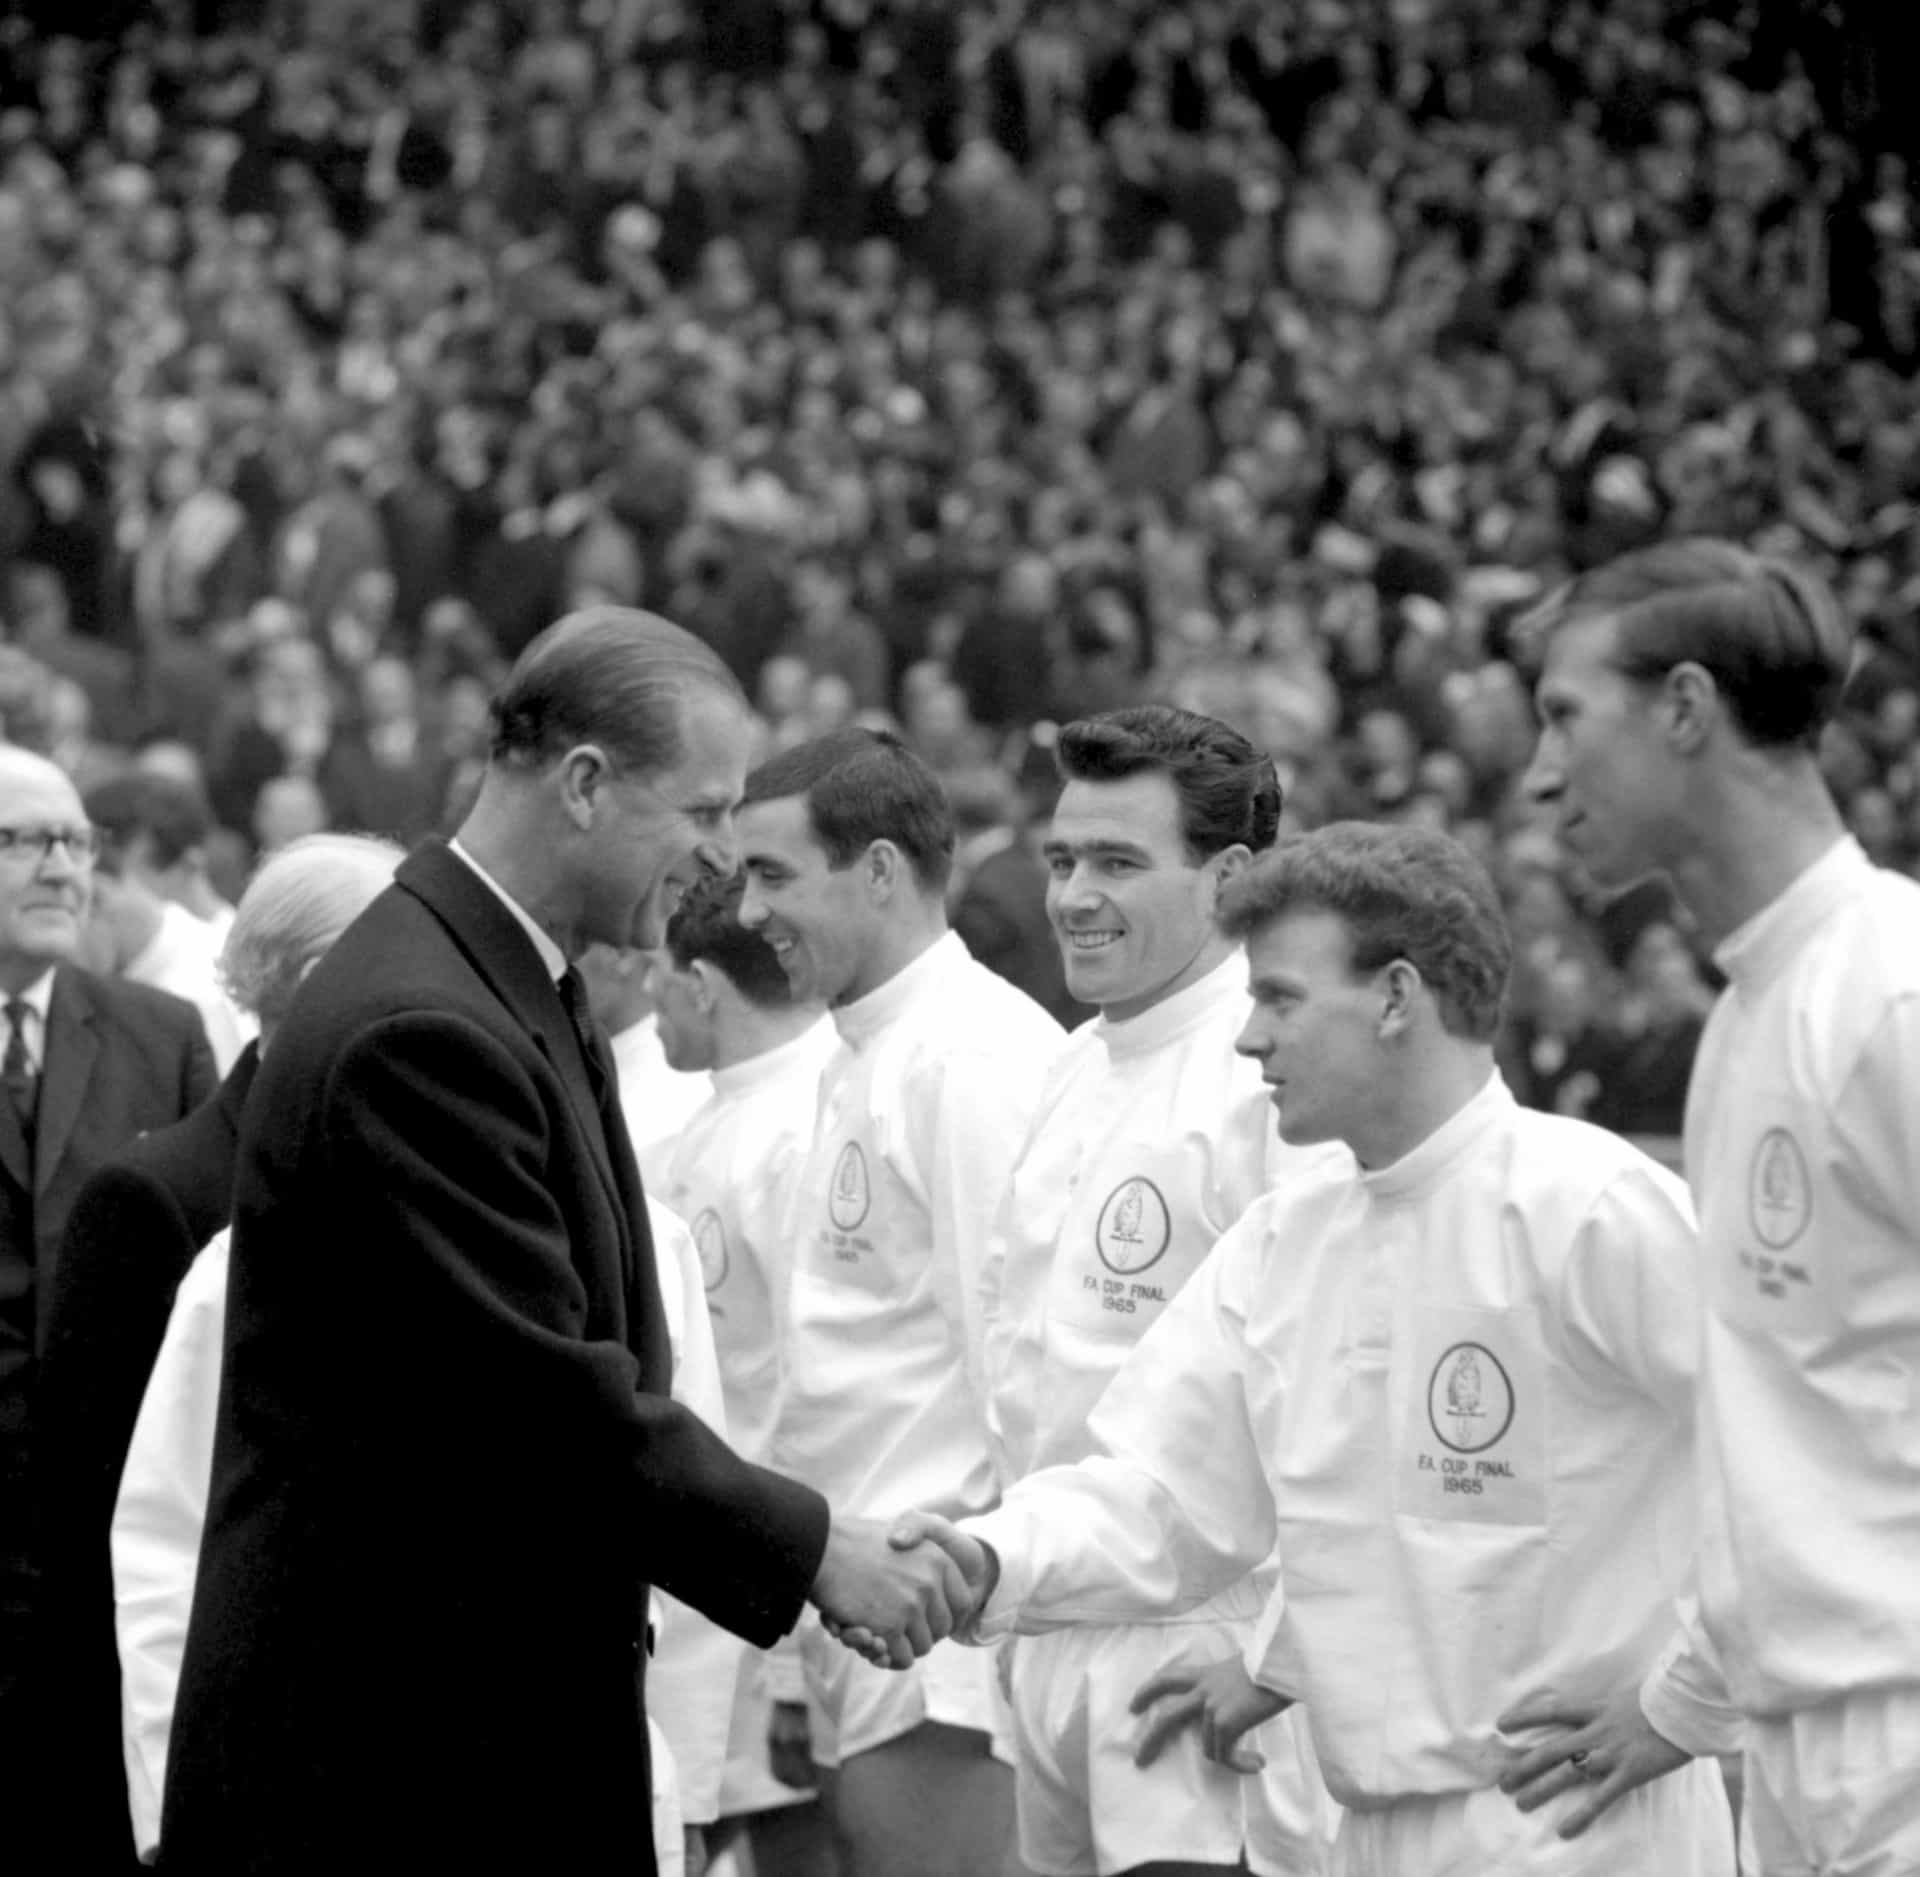 En un partido de fútbol en el norte de Inglaterra, dándole un choque de manos a jugadores del Leeds United como Jack Charlton, mientras Jim Storrie observa.